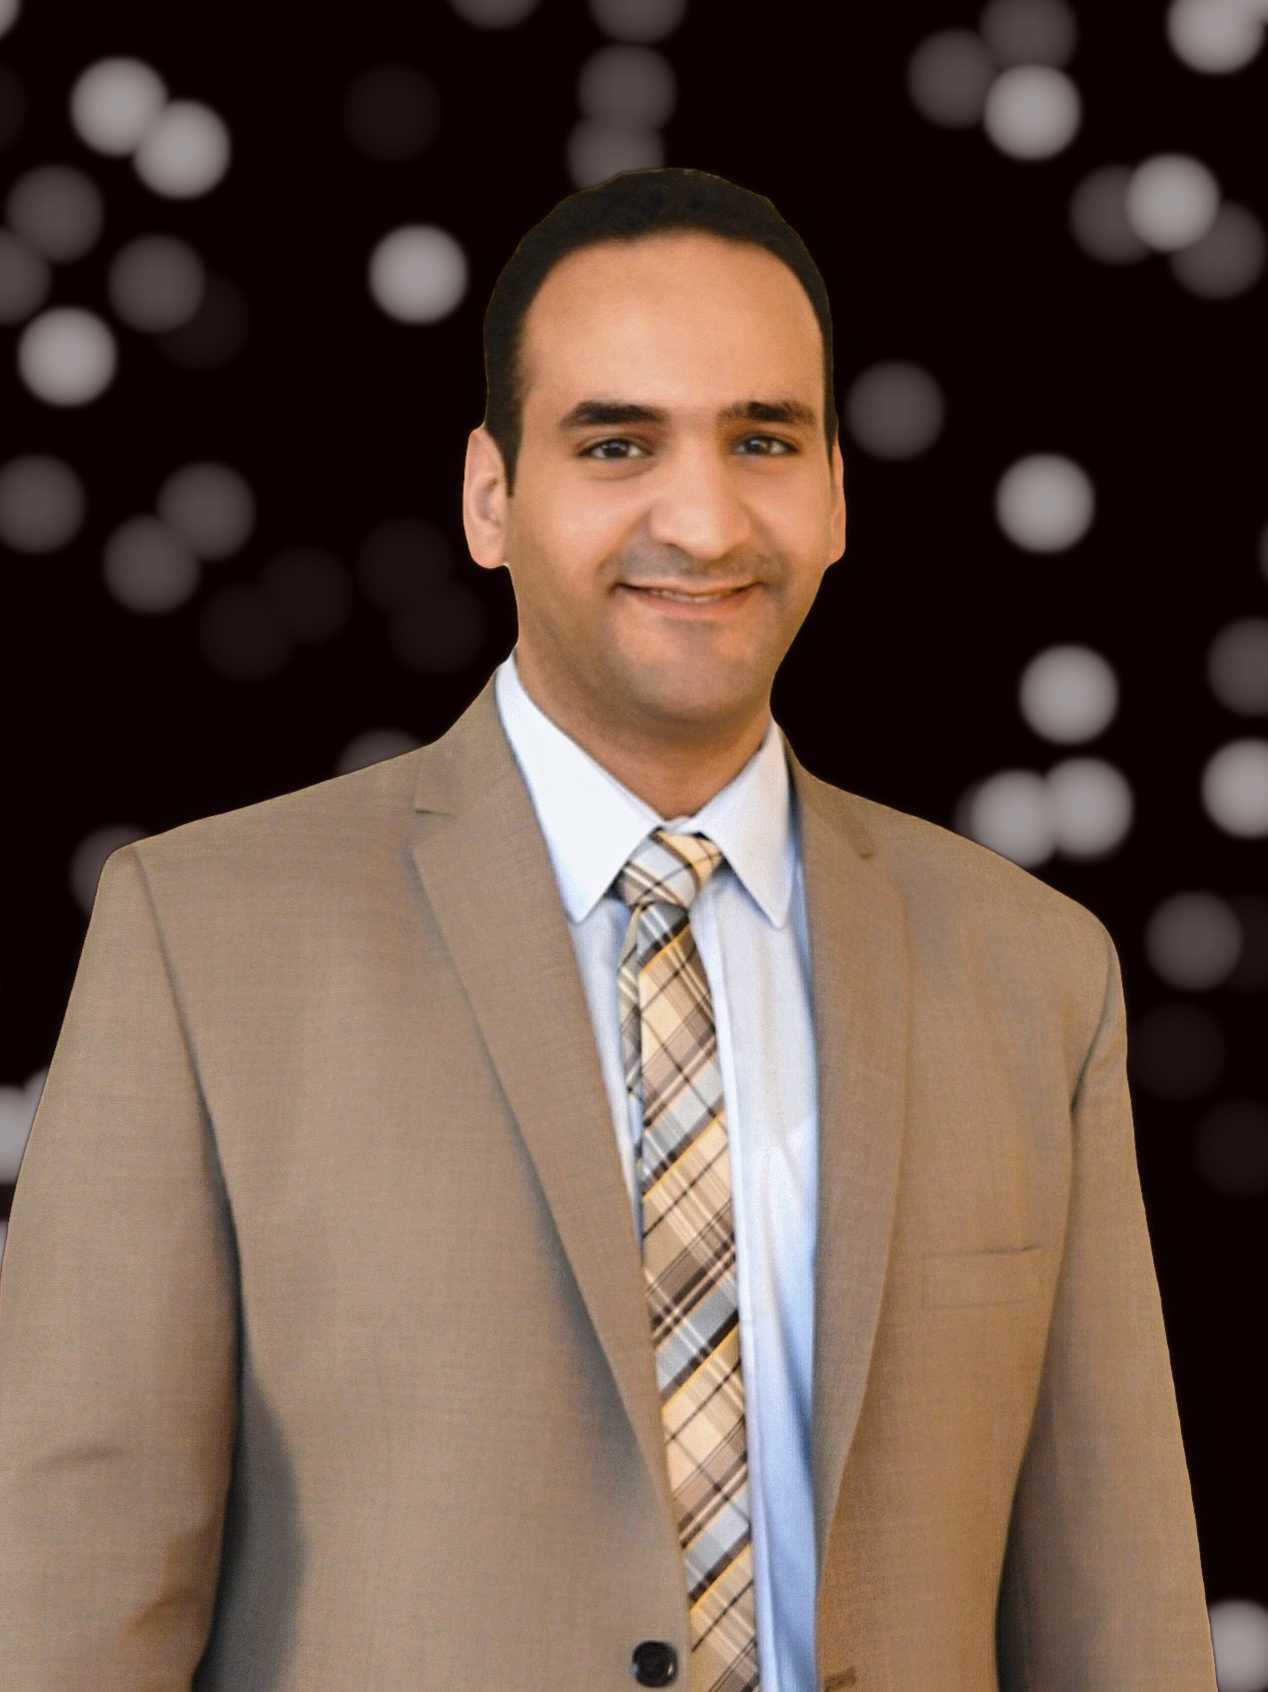 Dr. Mohamed abdelhafez